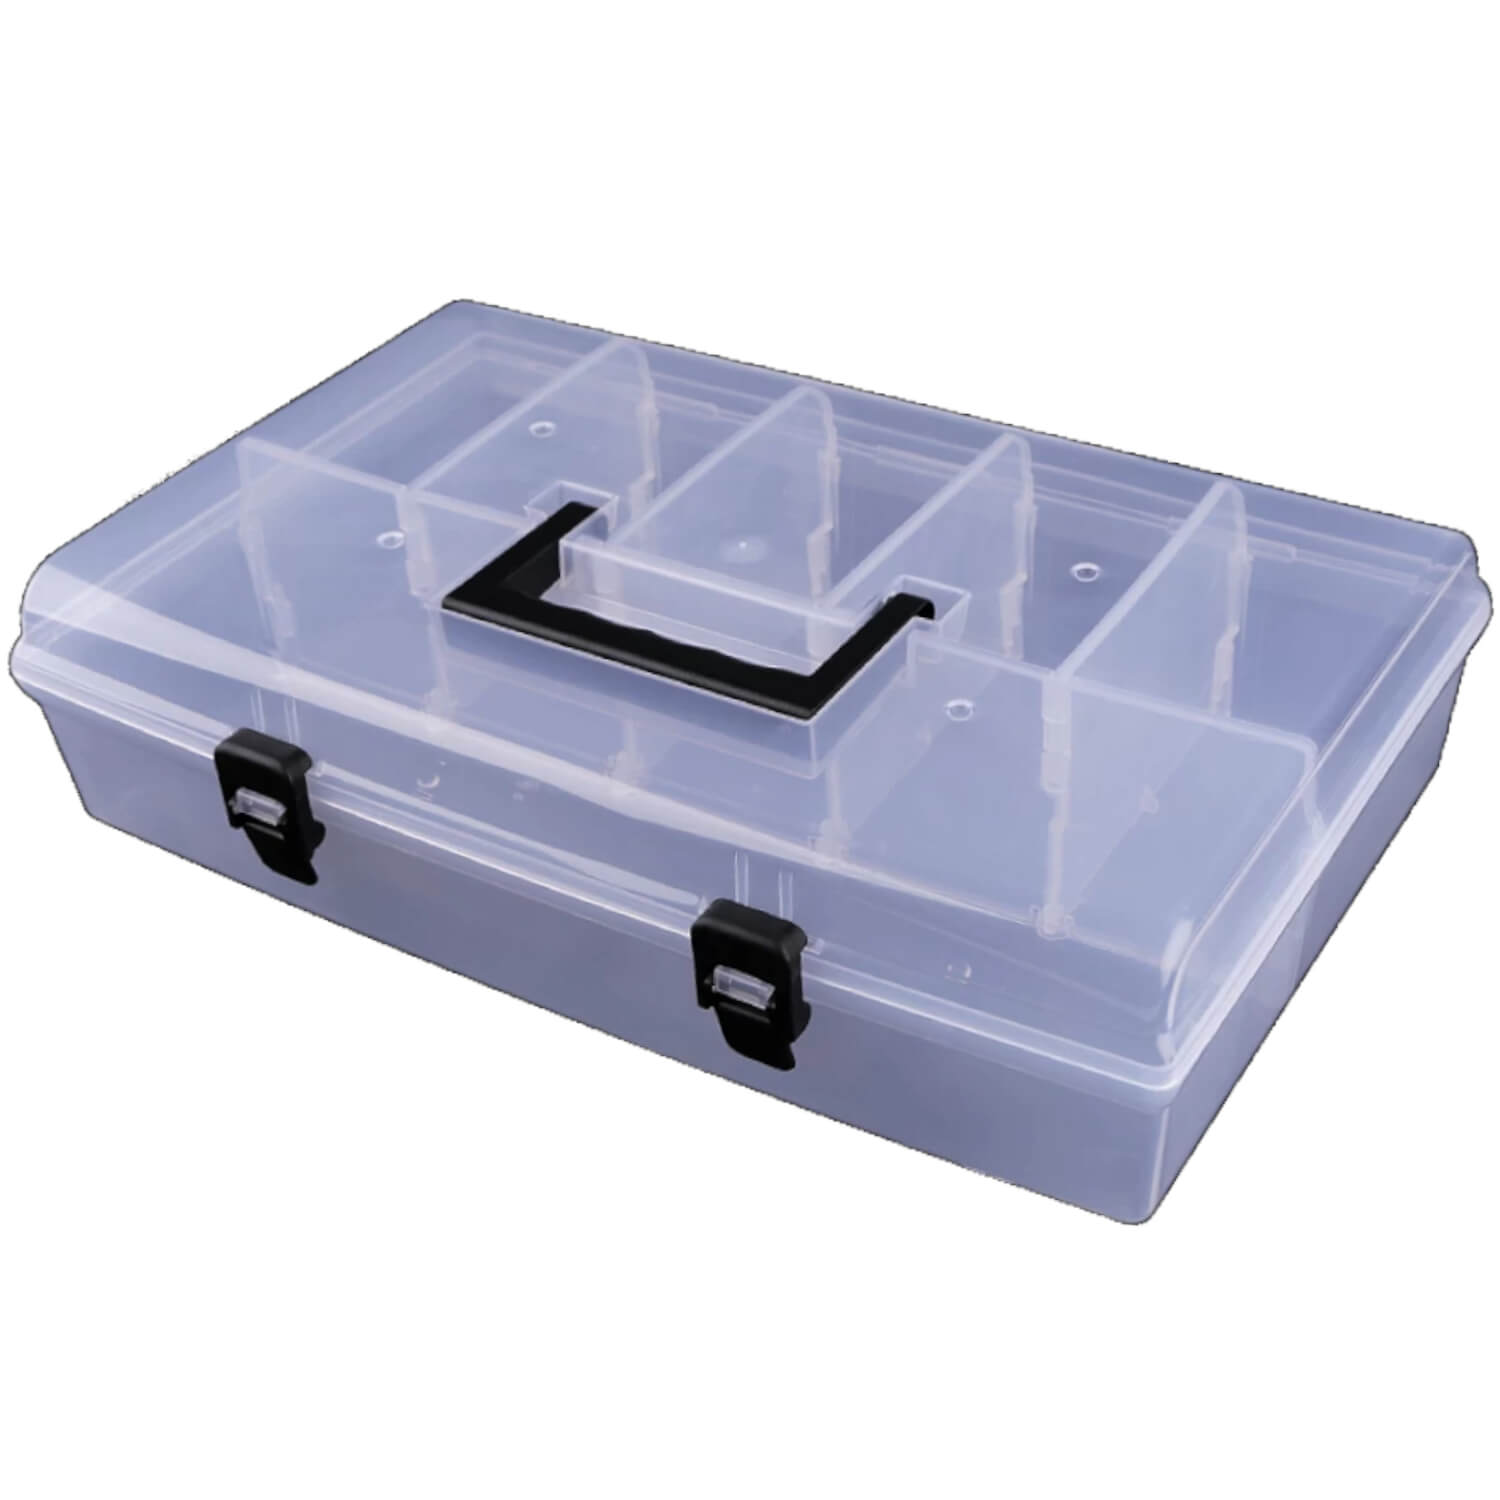 Sortierbox - Sortierkoffer aus flexiblen Kunststoff 23,0 x 35,0 x 9,0 cm (3)